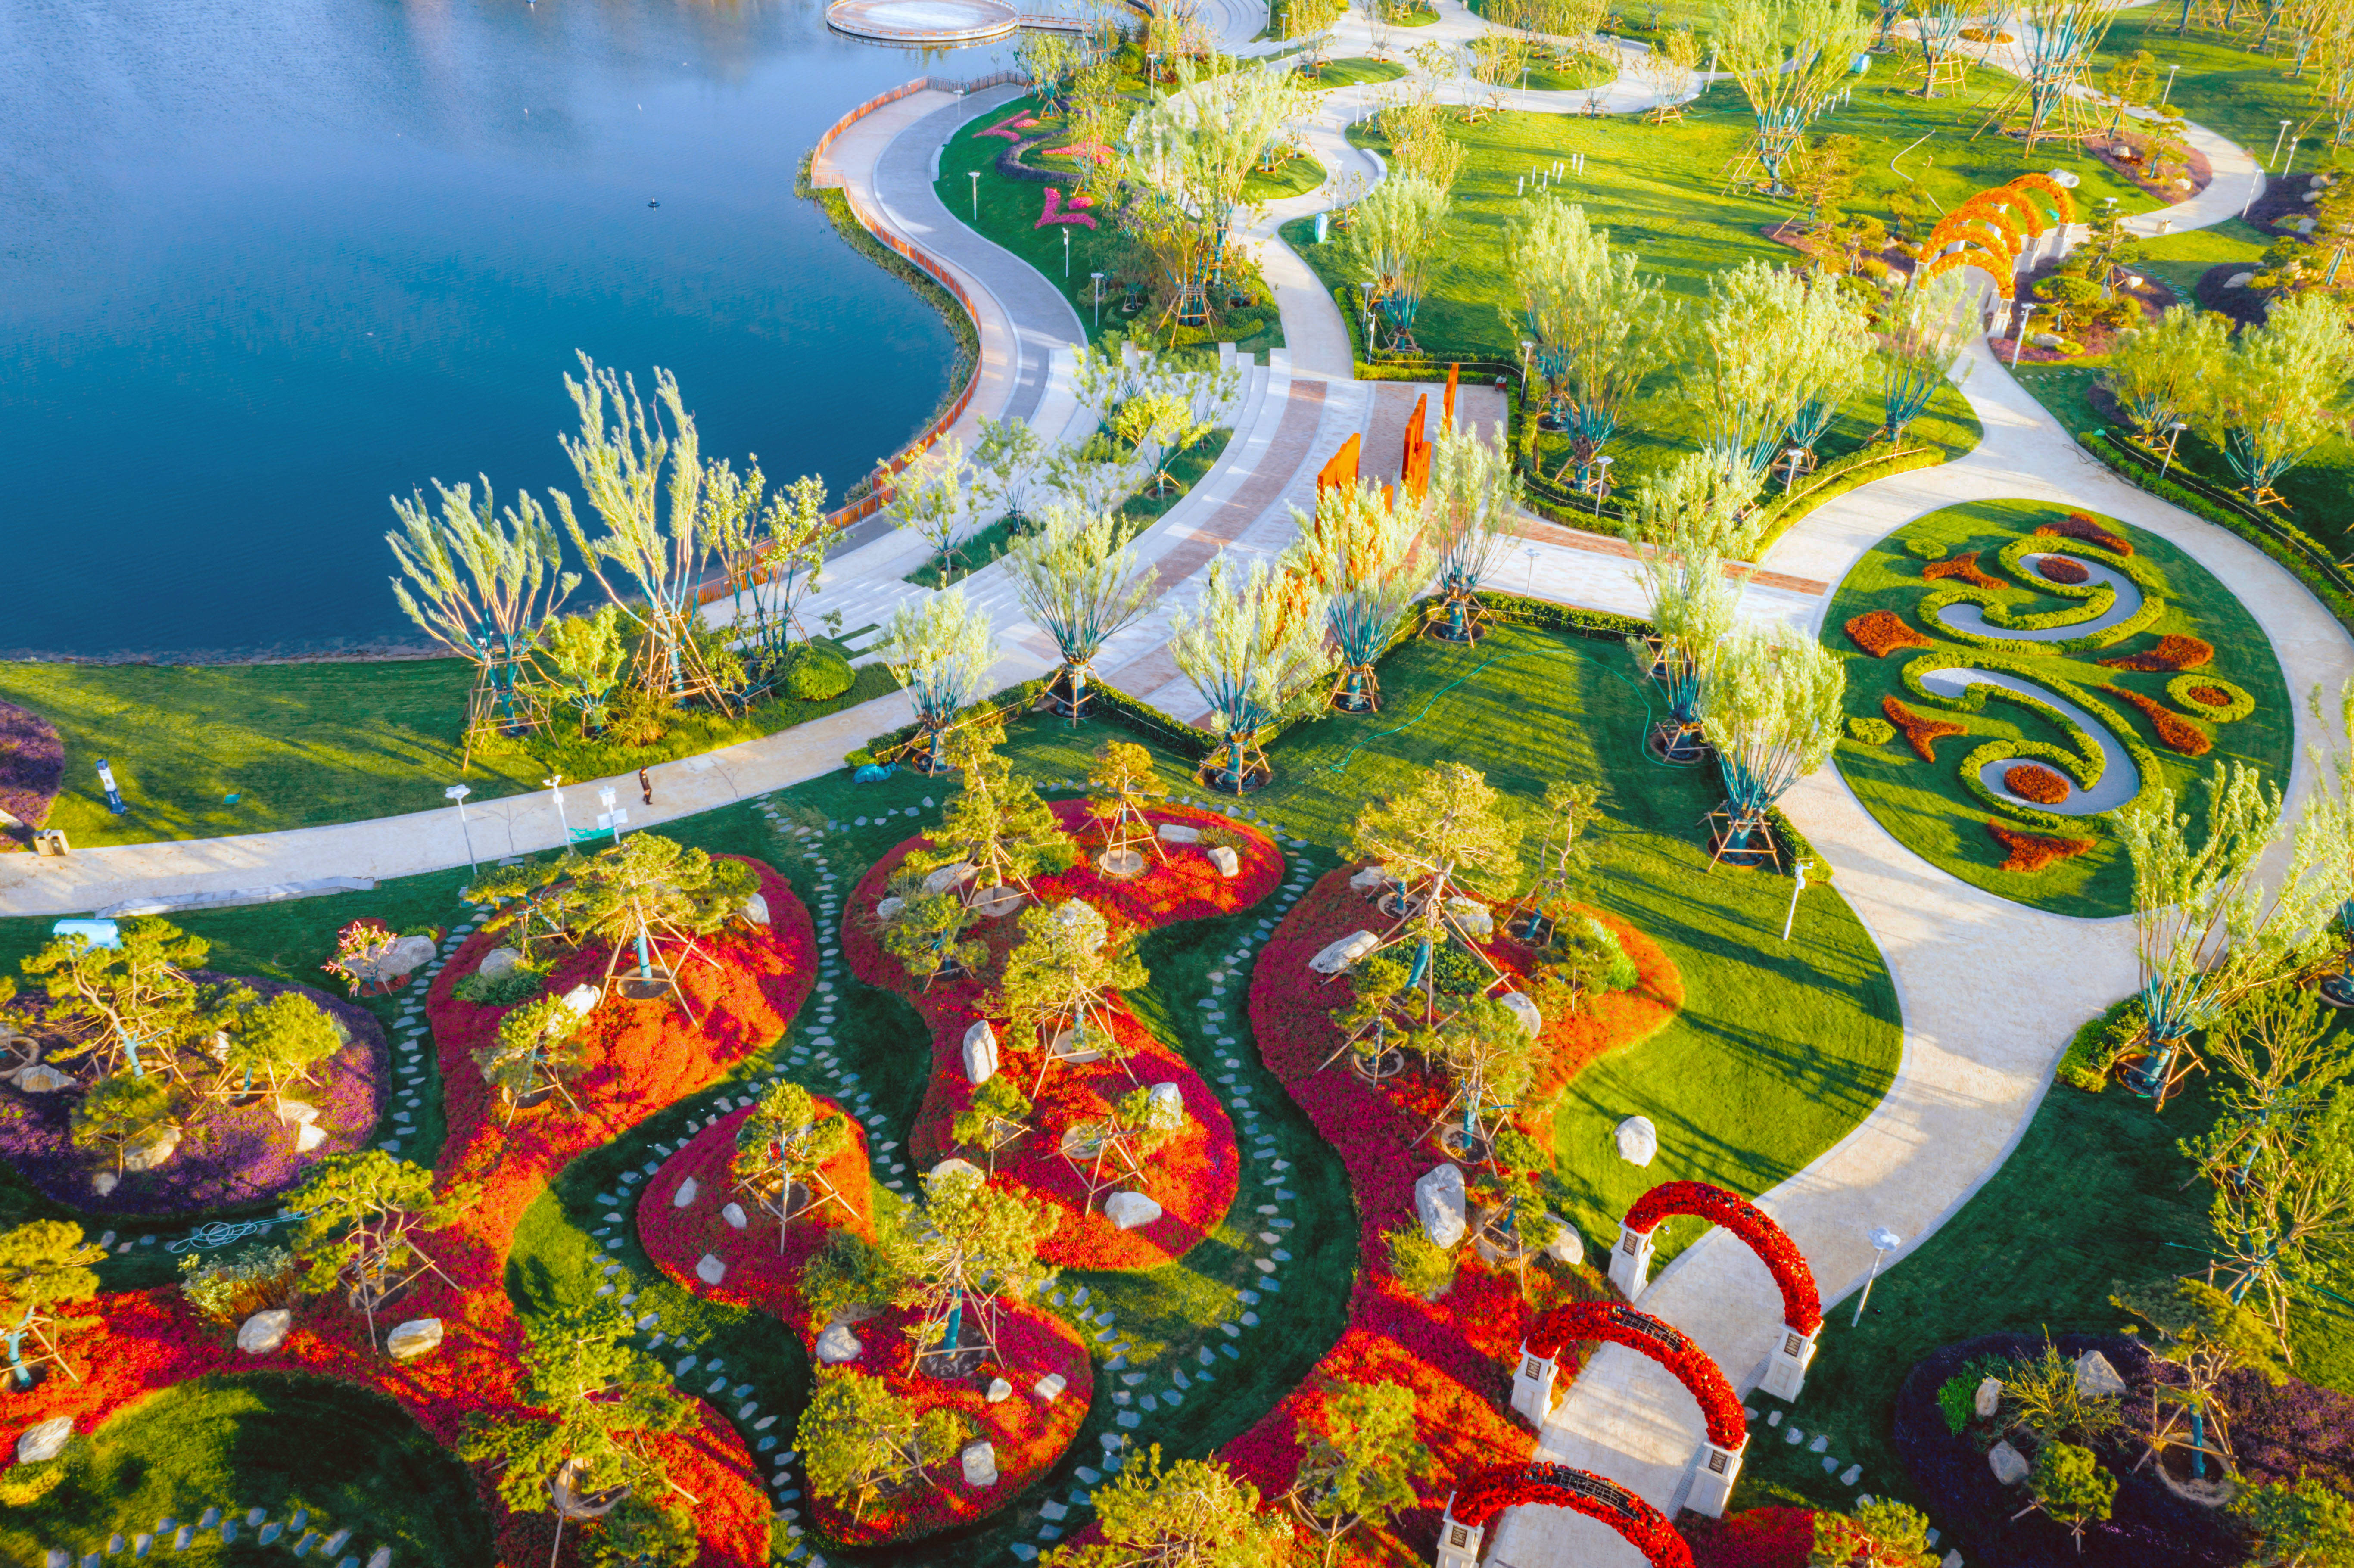 天鹅湖公园,珍稀花卉园,千鸟乐园三大主题园林贯穿其中,过水景桥,亲水